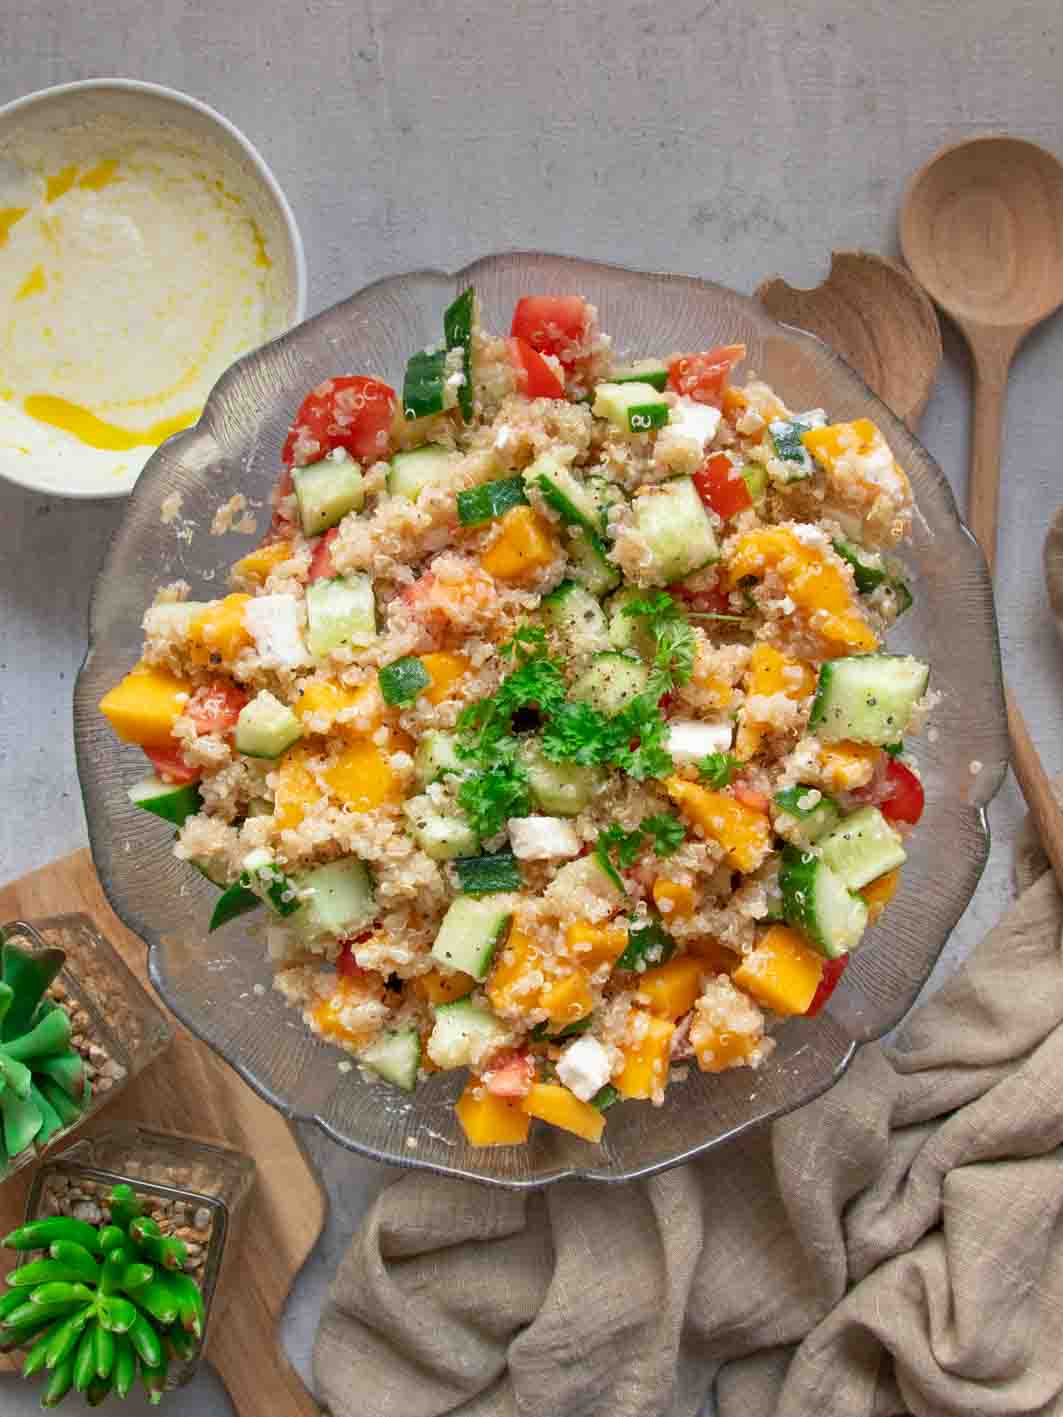 Gesunde Rezepte - Quinoa-Salat vegetarisches Abendessen